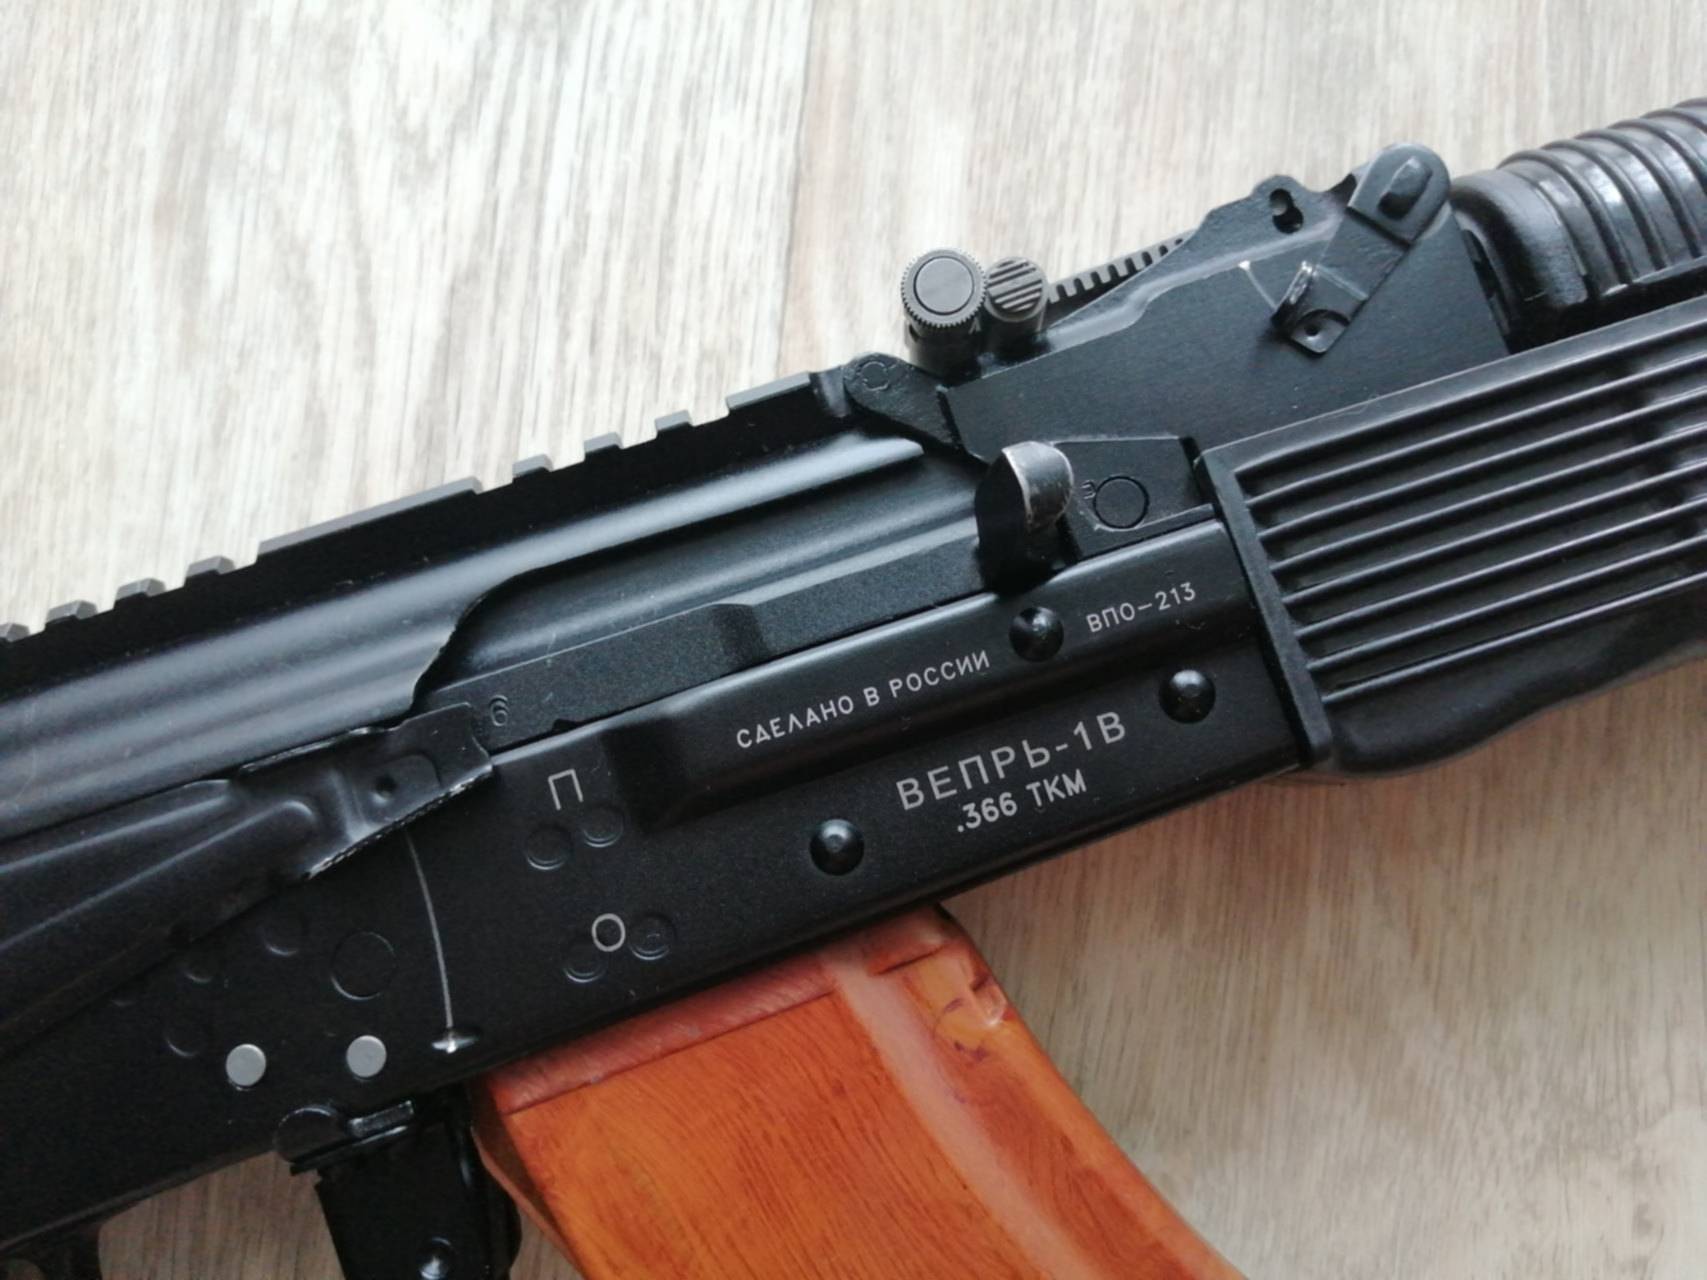 Гладкоствольное ружьё Сайга-366 калибр 366 ТКМ